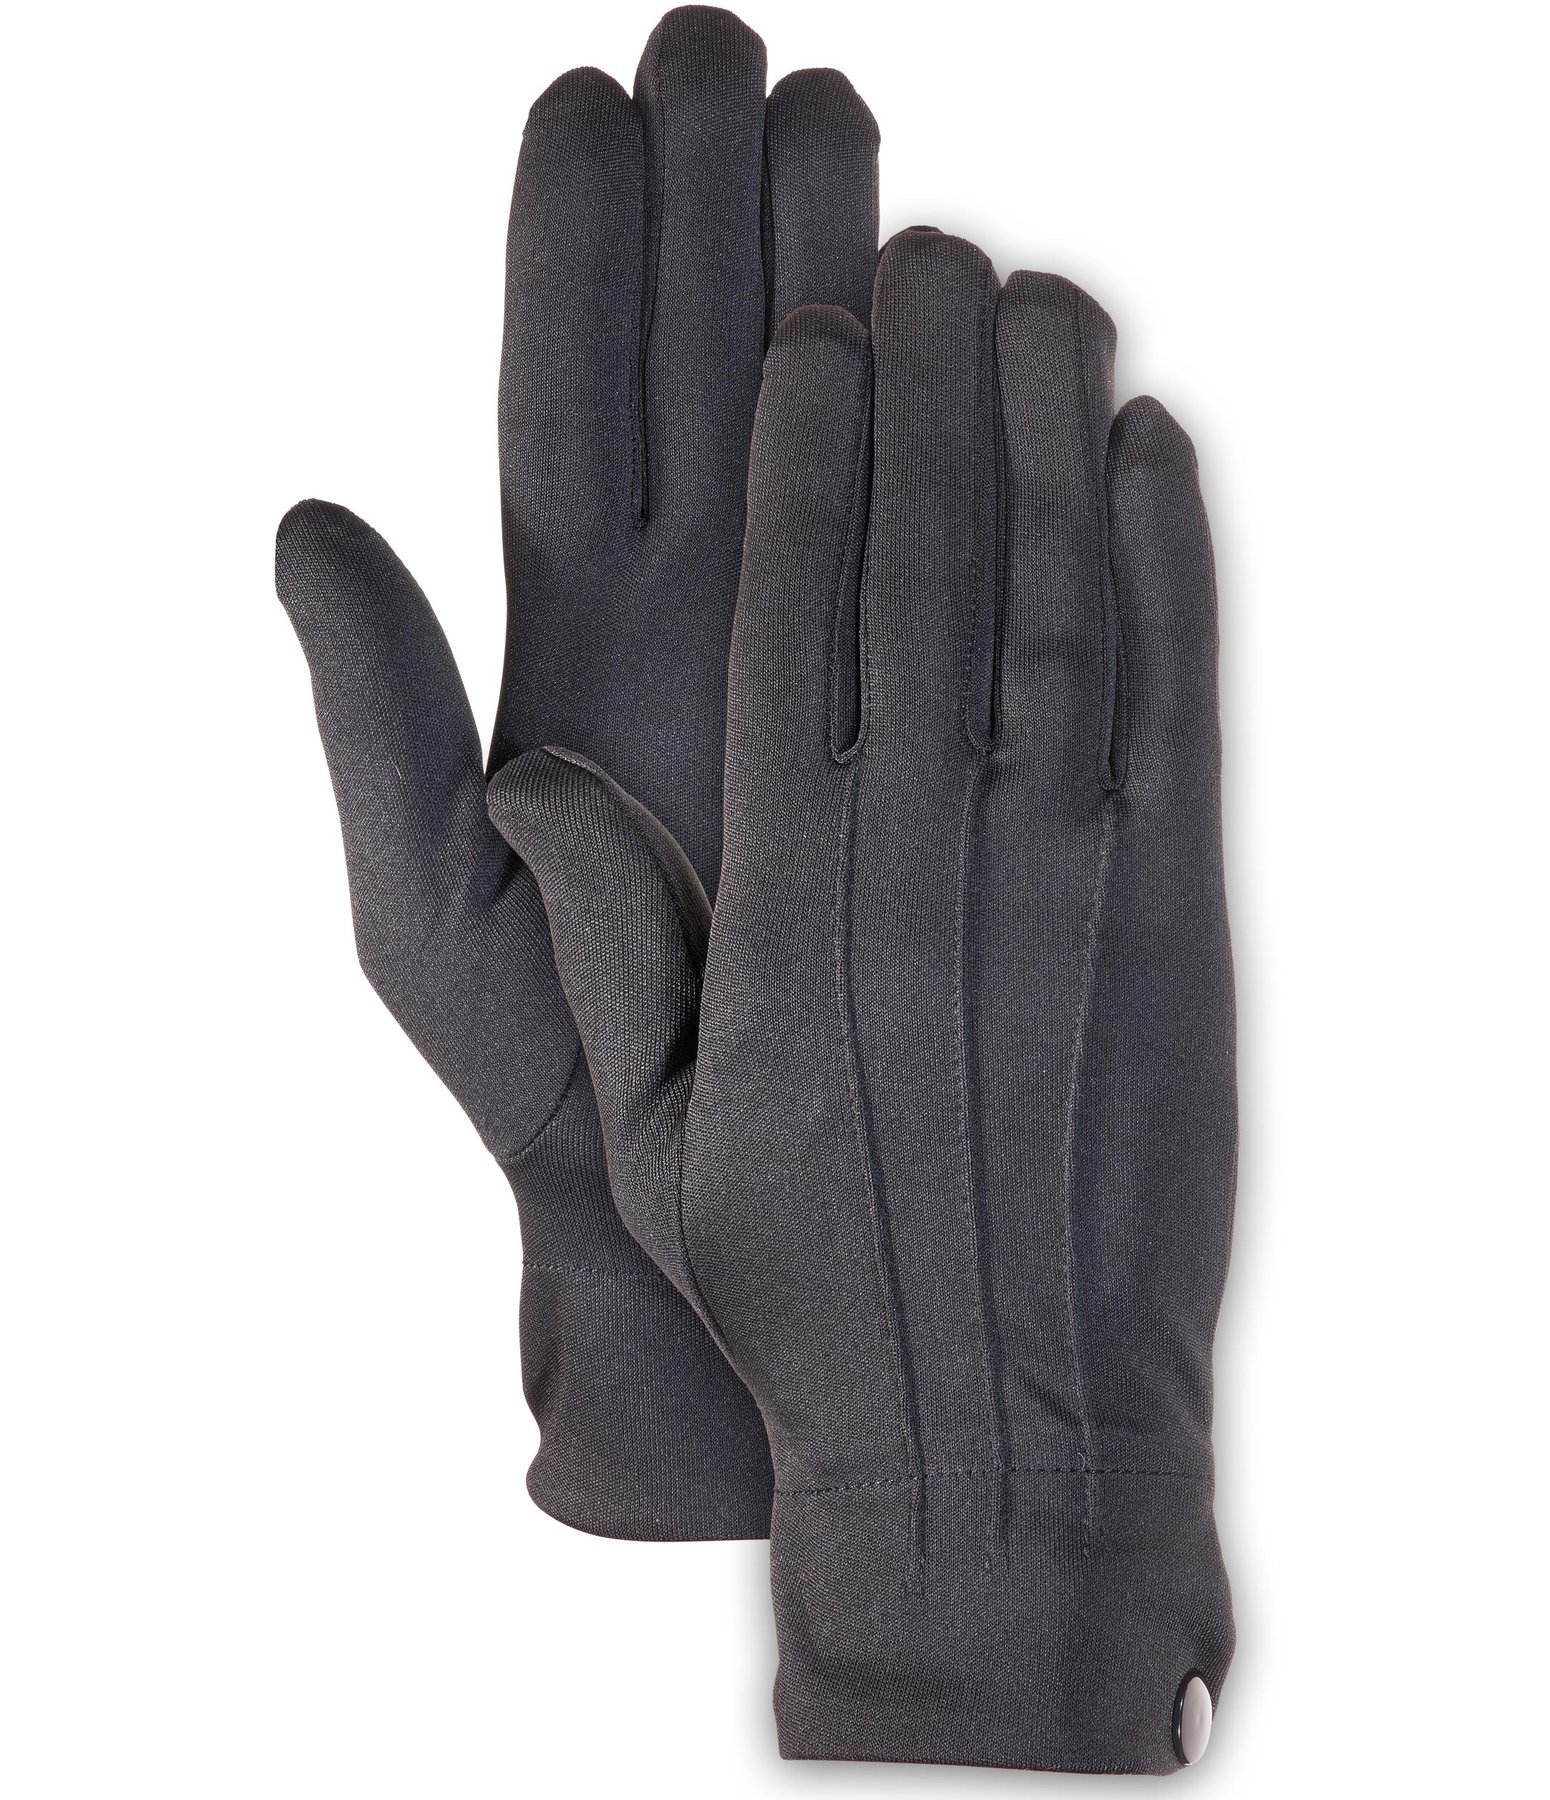 Liner Gloves